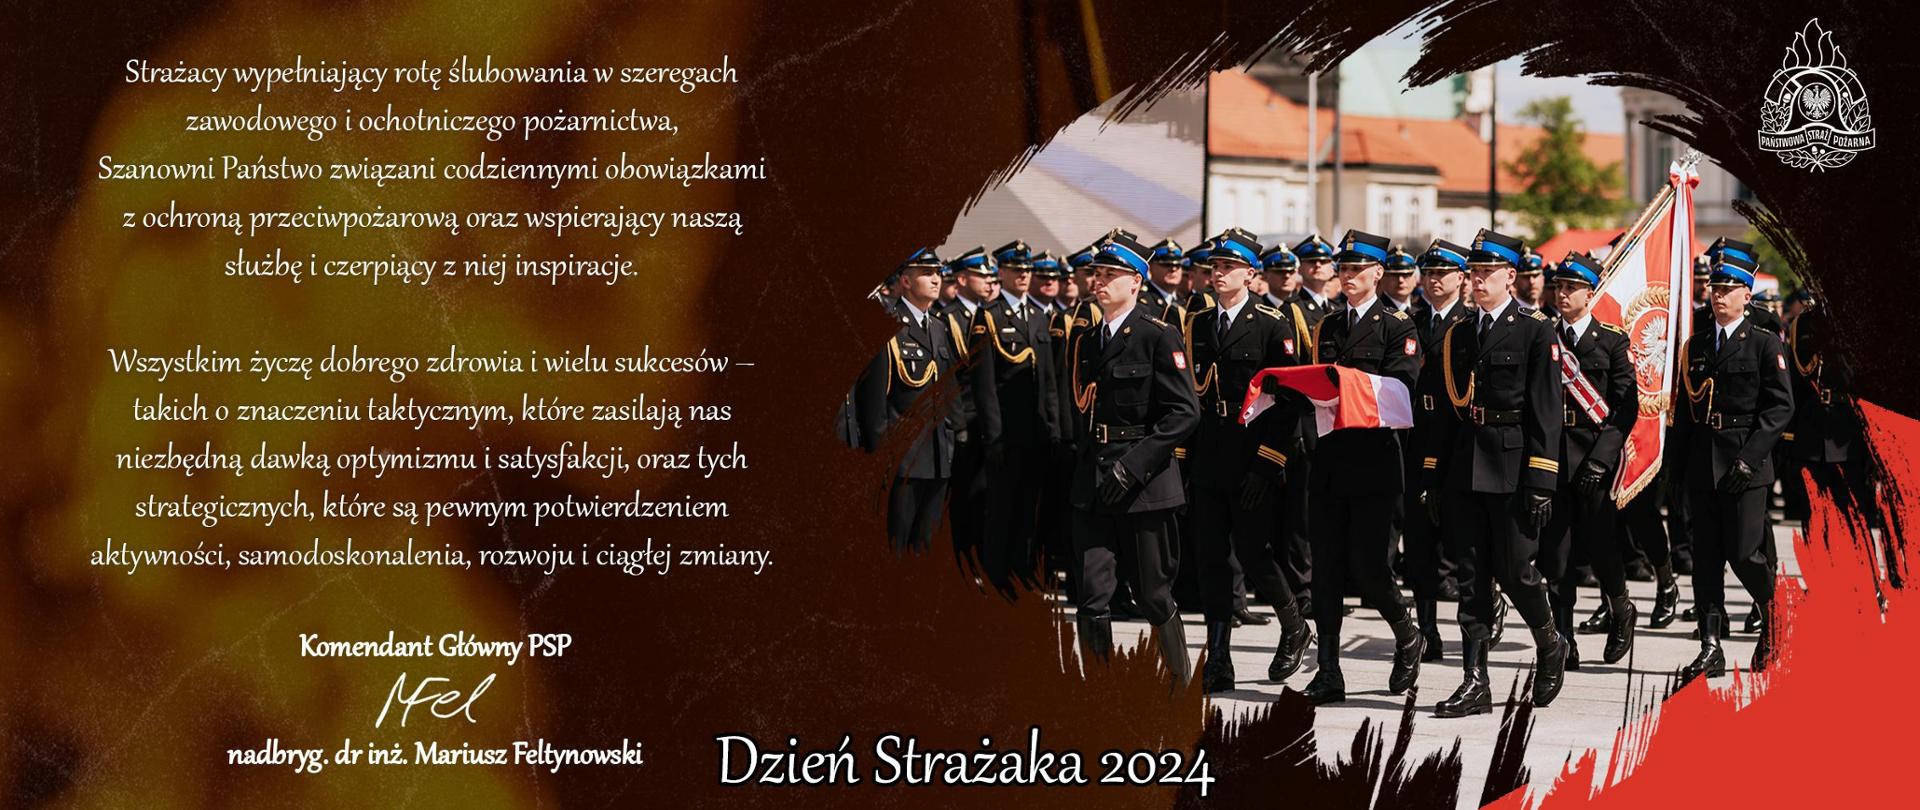 Życzenia Komendanta Głównego z okazji Dnia Strażaka 2024